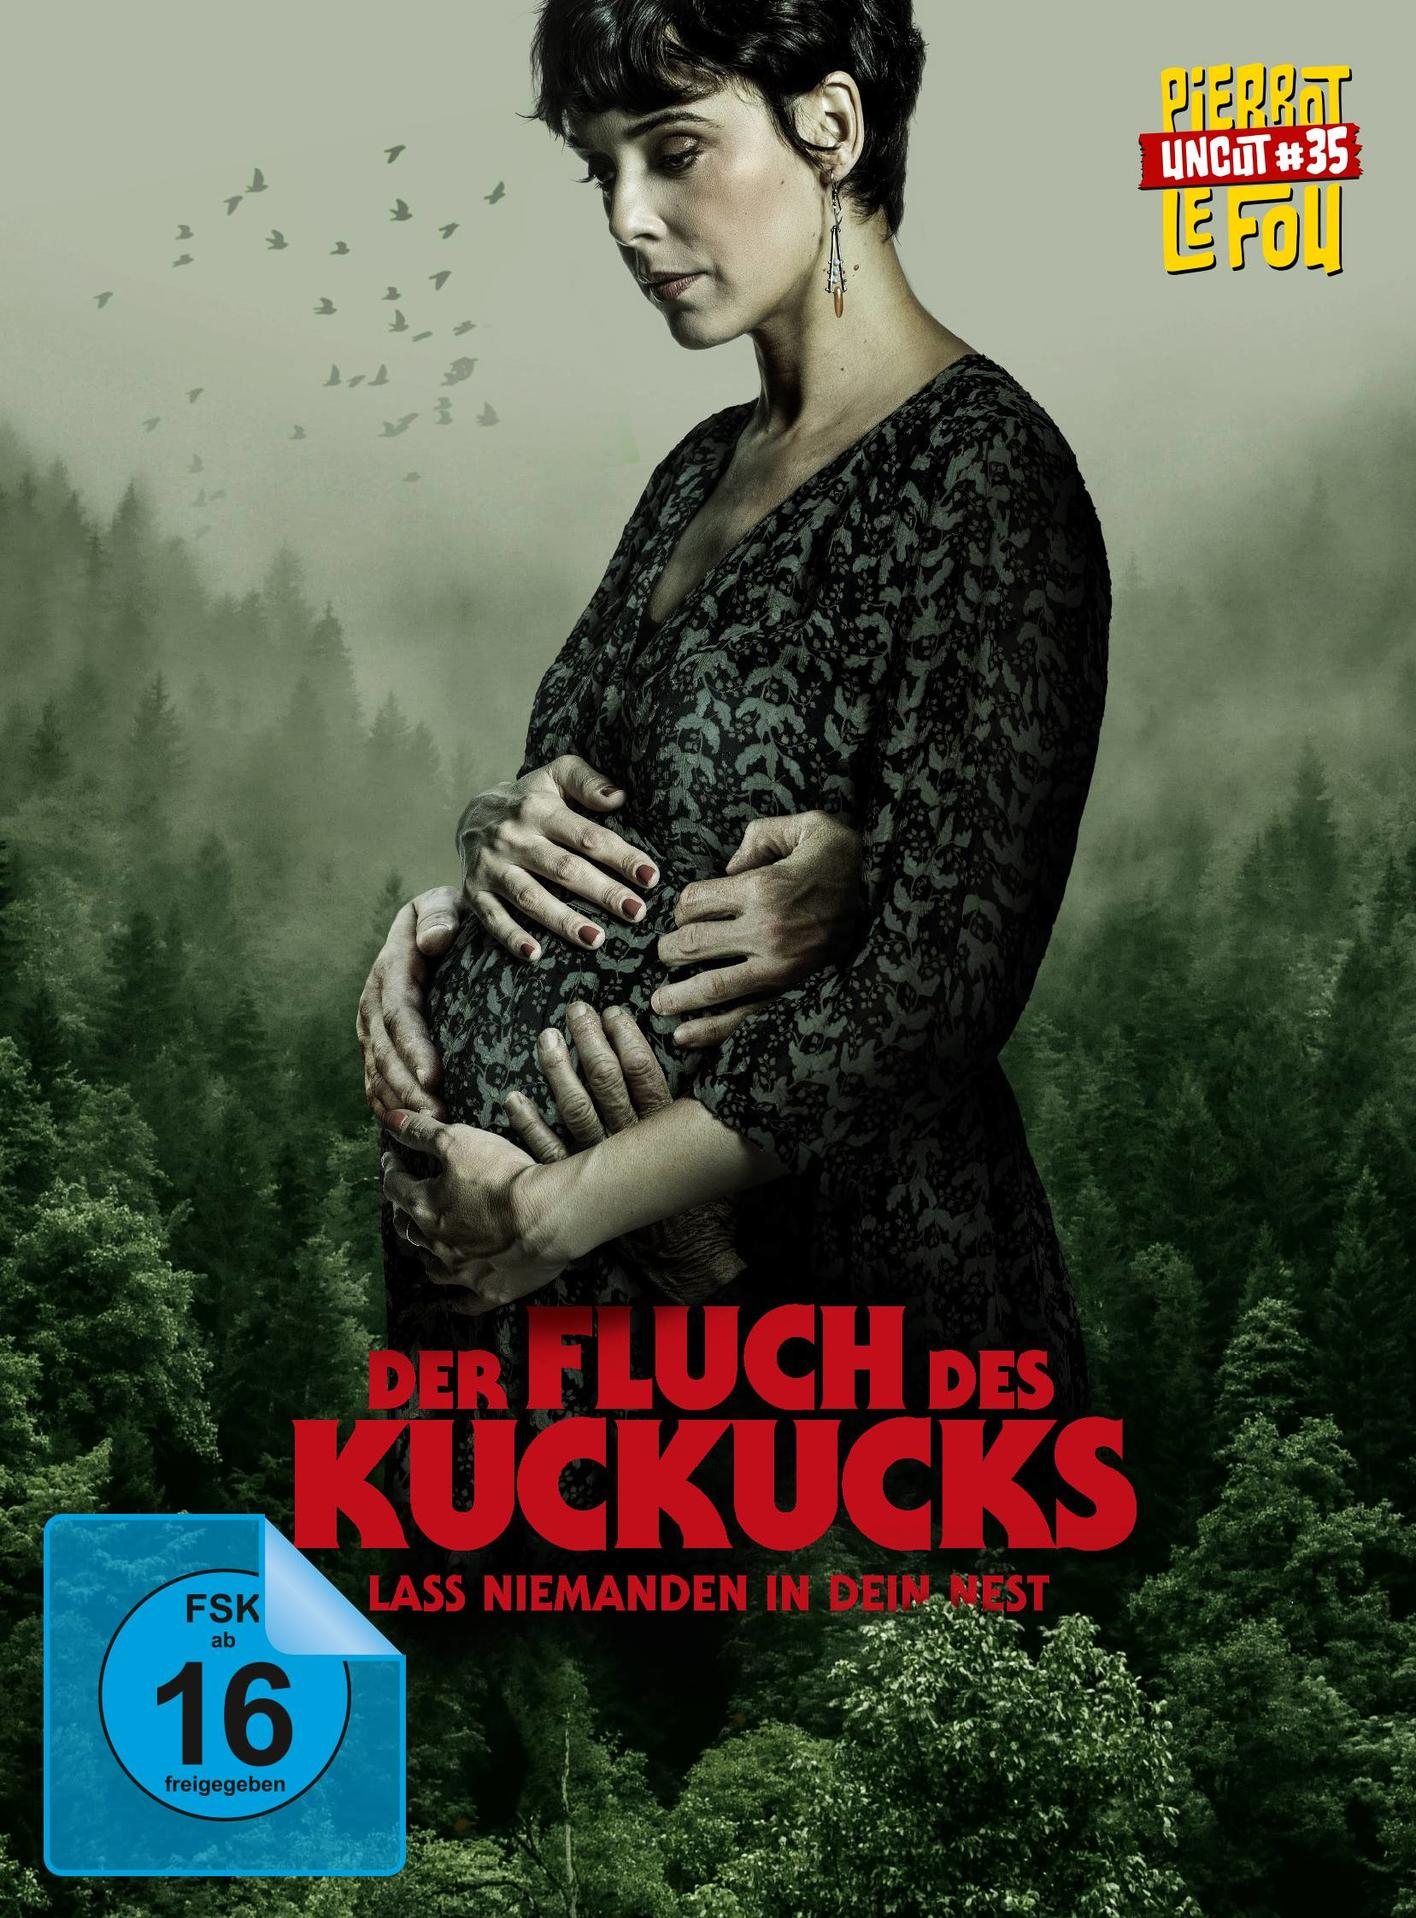 - in Nest Blu-ray dein + Kuckucks niemanden des Fluch Lass DVD Der